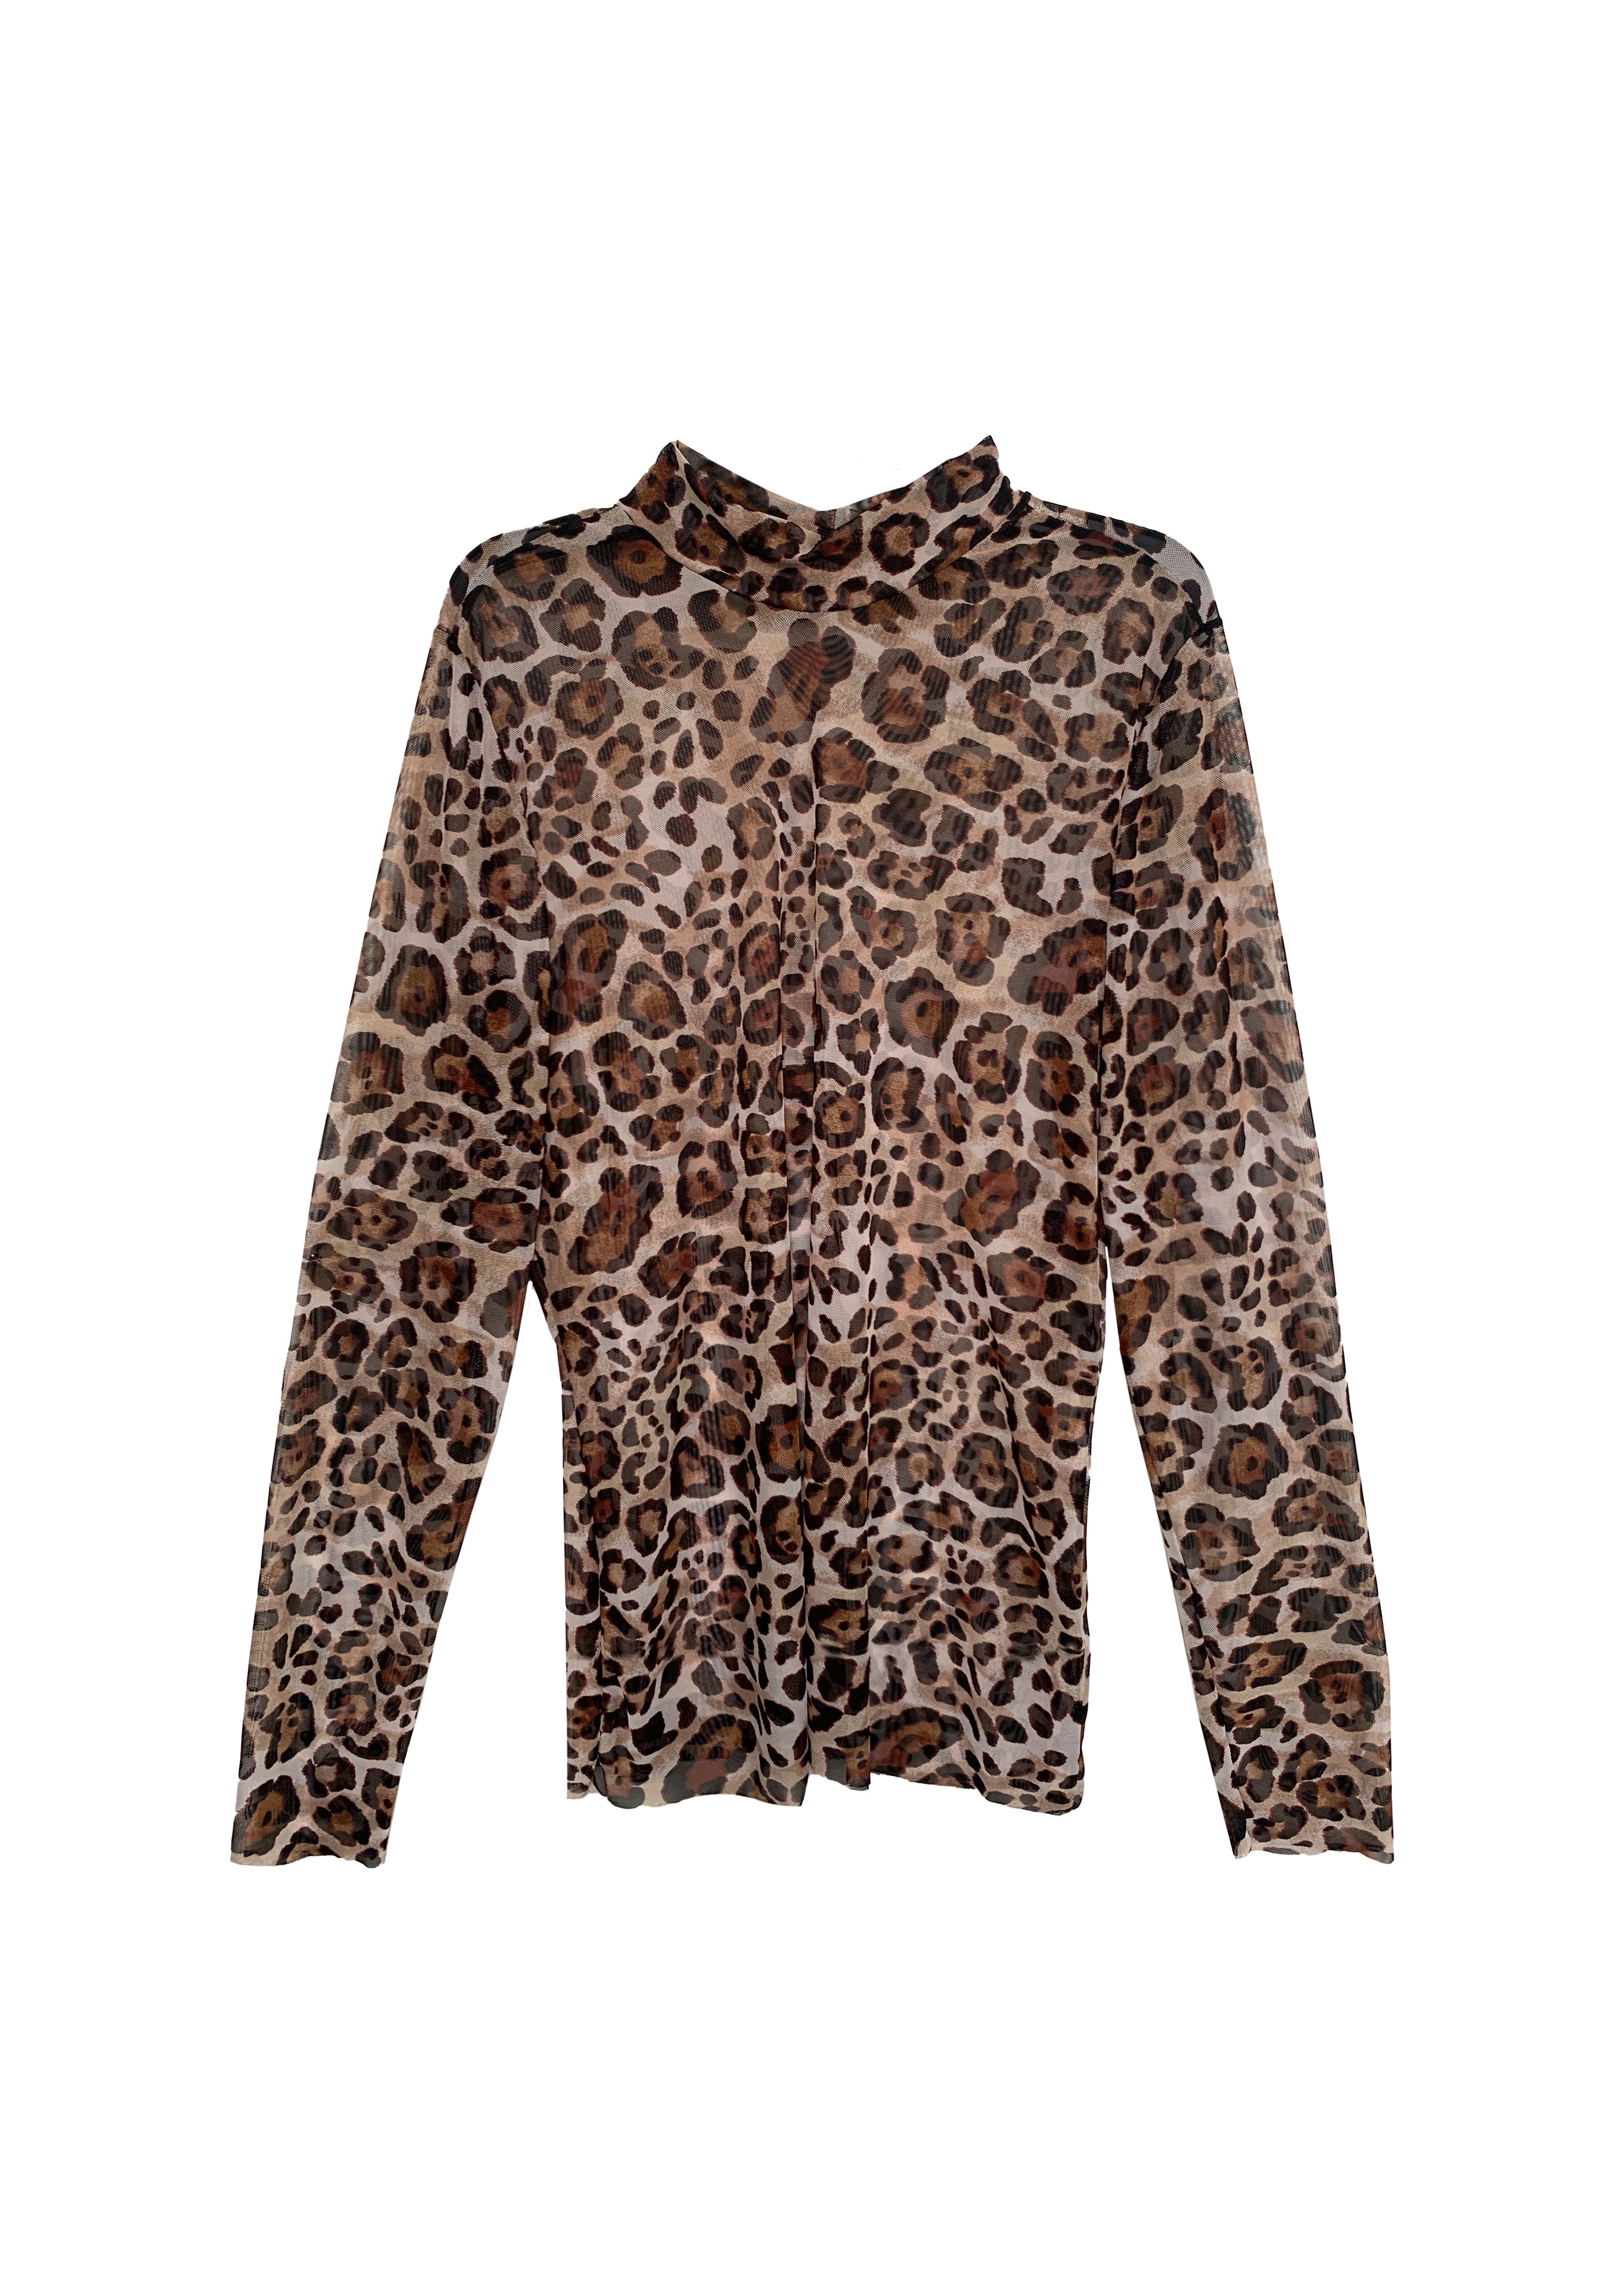 Mesh Maxi Slip Skirt - Leopard – Baacal